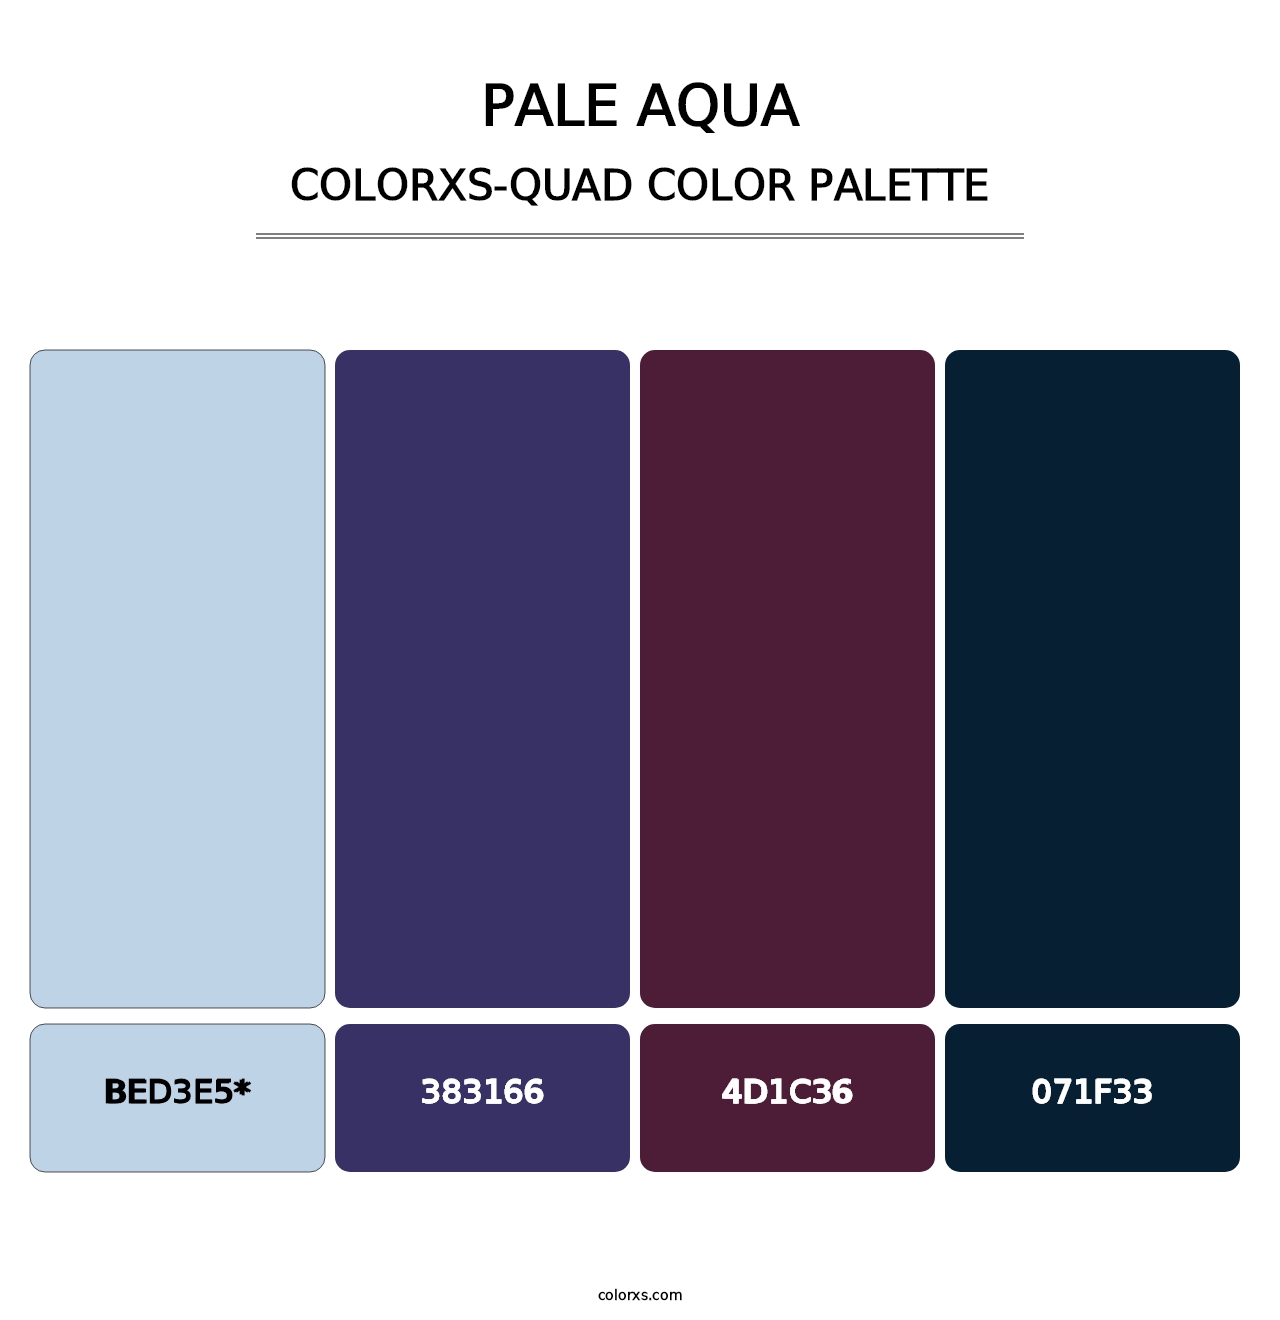 Pale Aqua - Colorxs Quad Palette